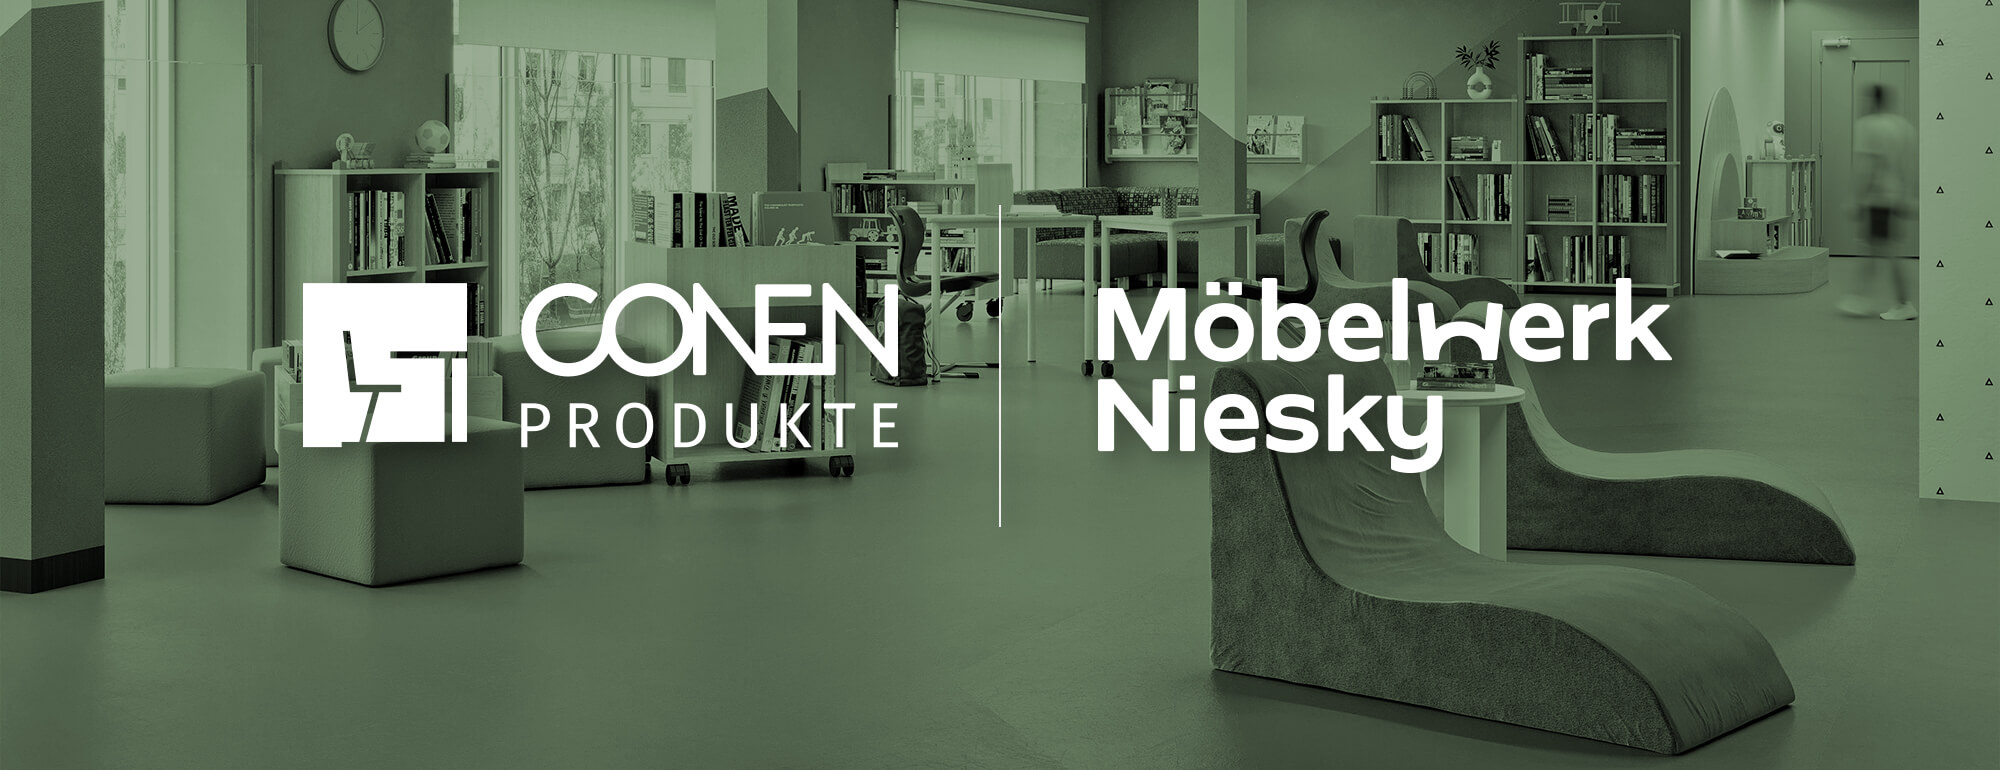 gemeinsamer Ganztagsschulkatalog der Conen Produkte GmbH und der Möbelwerk Niesky GmbH